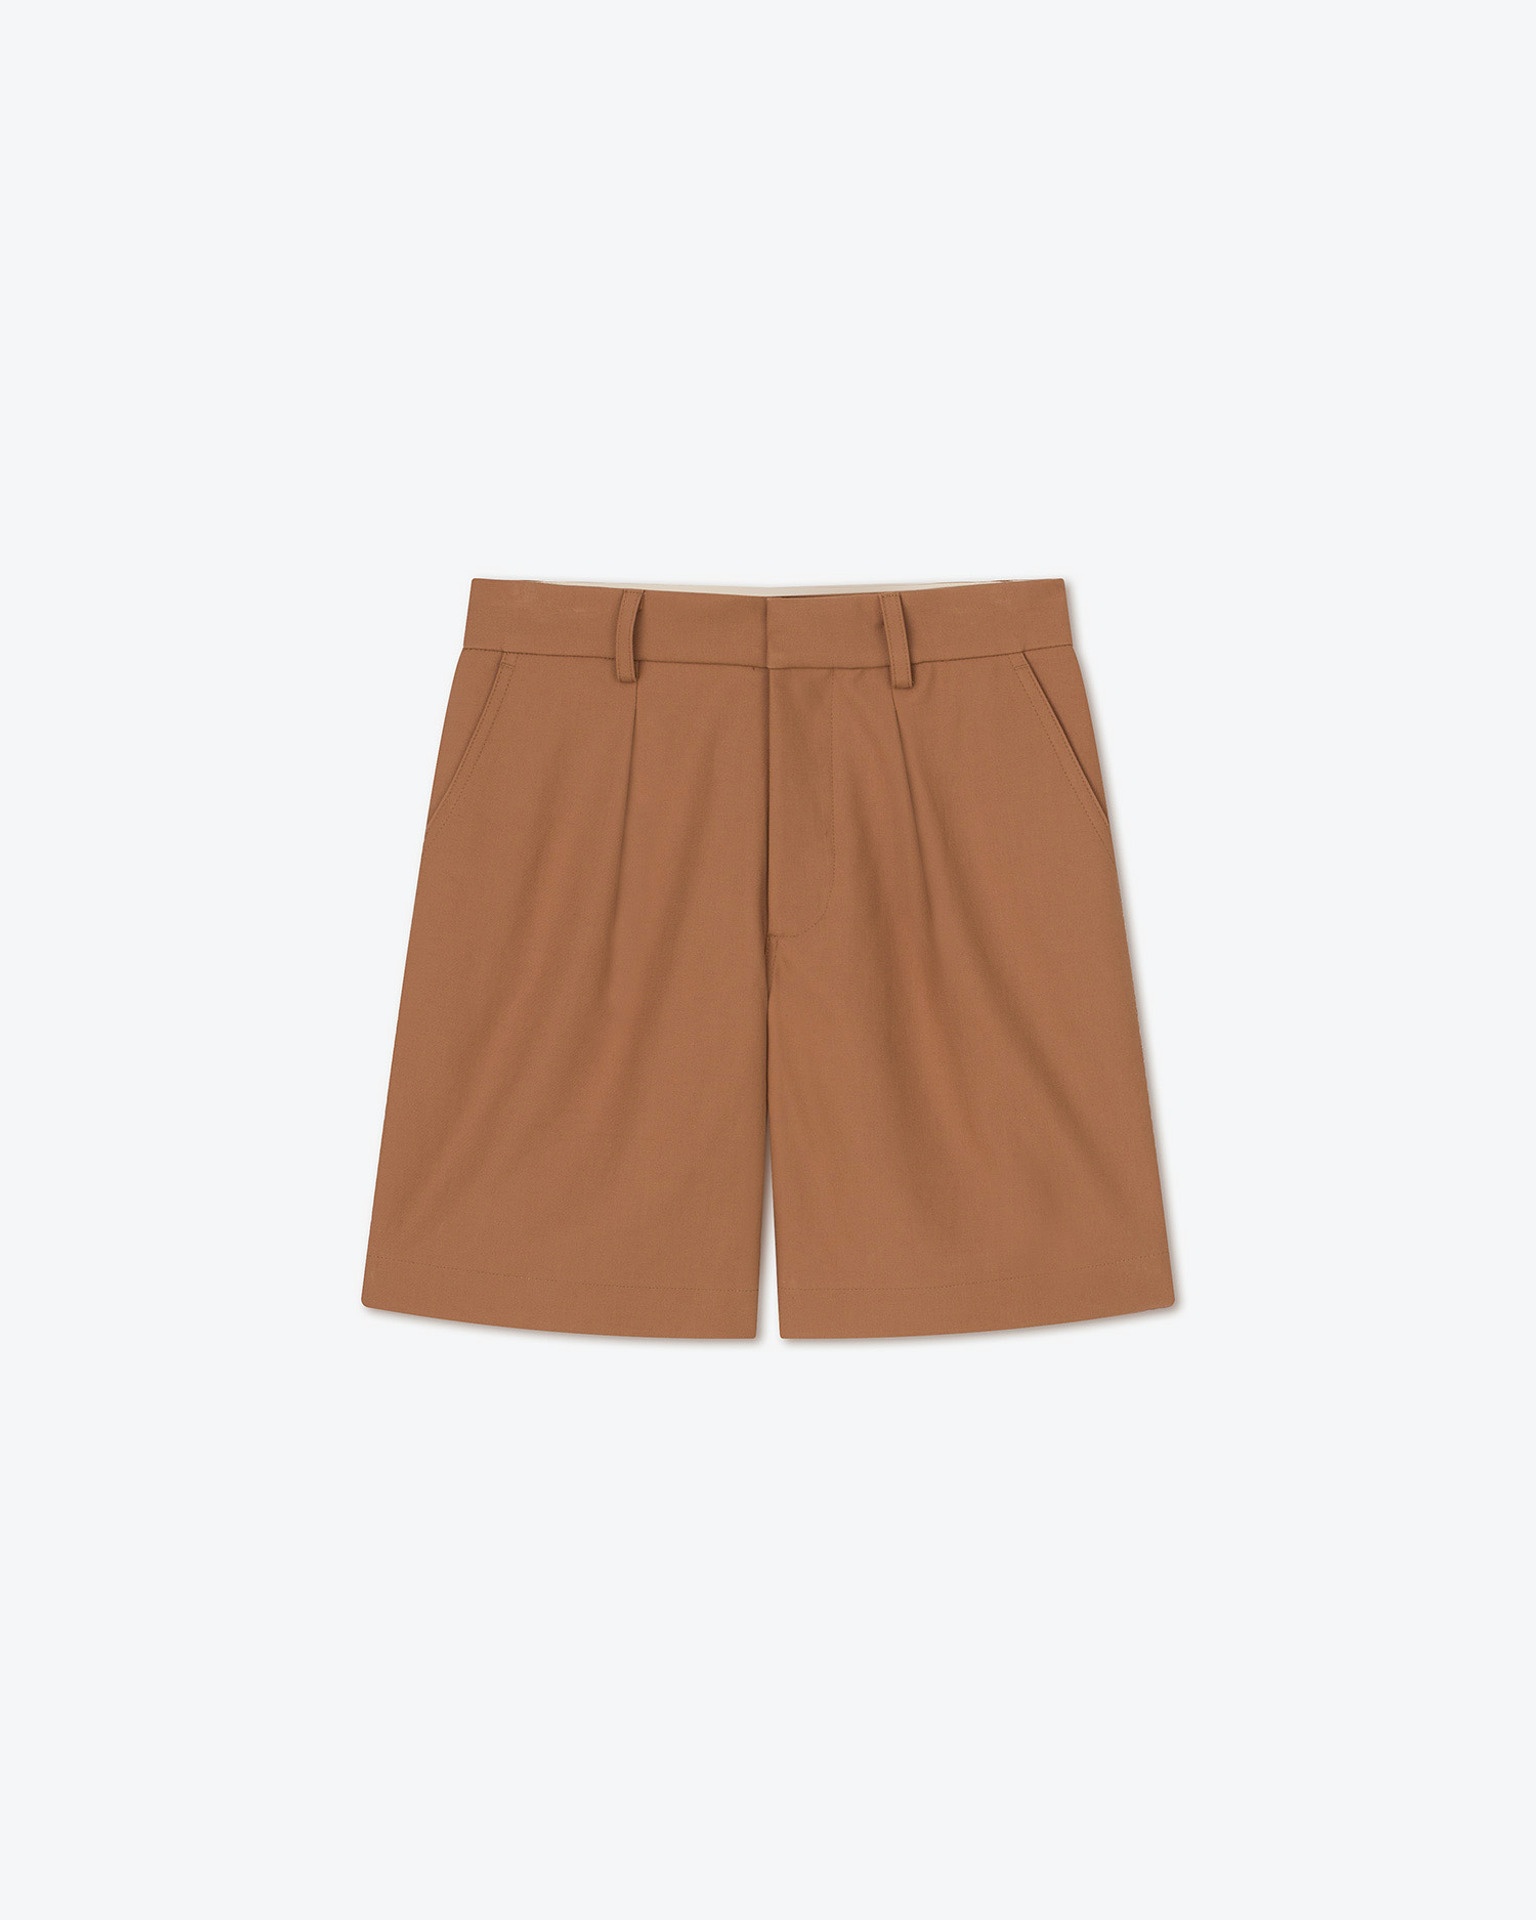 CALLEN - Structured twill shorts - Rust - 1